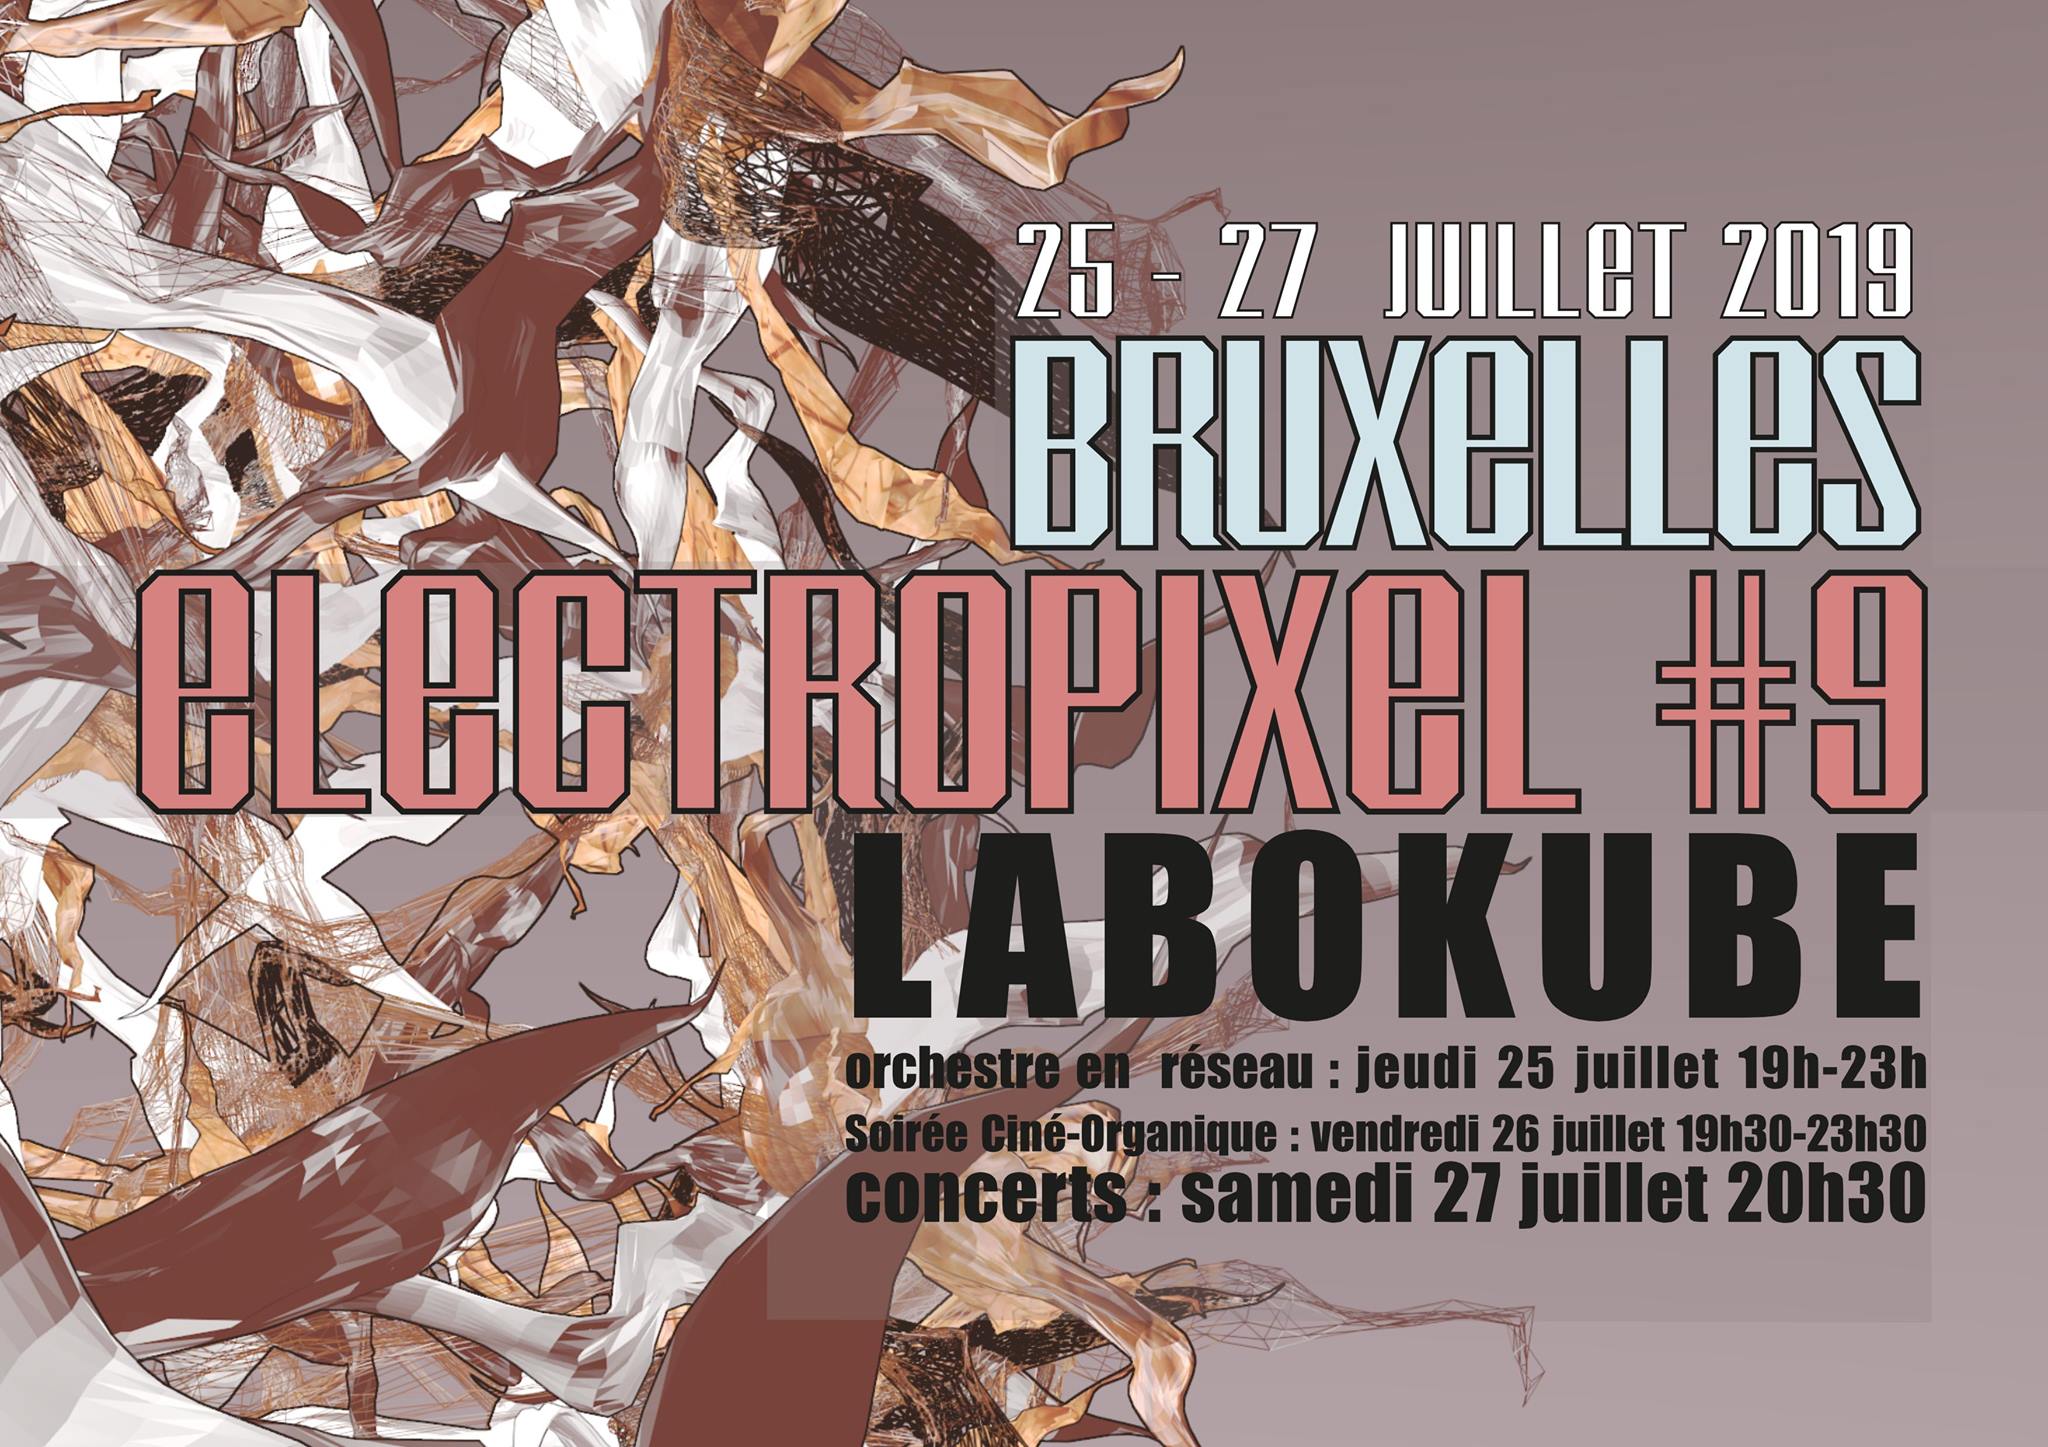 Electropixel #9 – du 25 au 27 juillet : Bruxelles